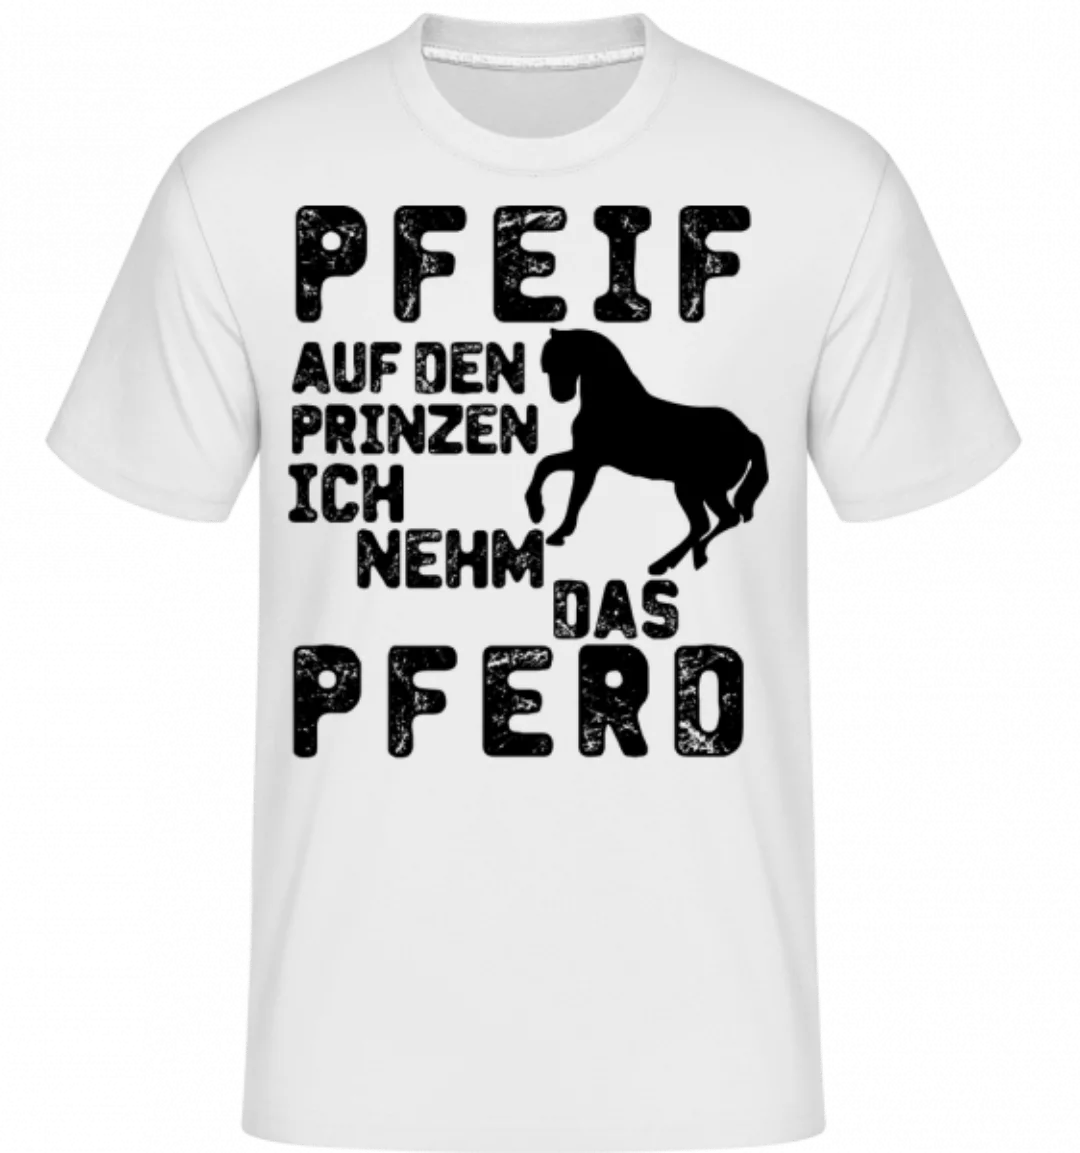 Pfeif Auf Den Prinzen · Shirtinator Männer T-Shirt günstig online kaufen